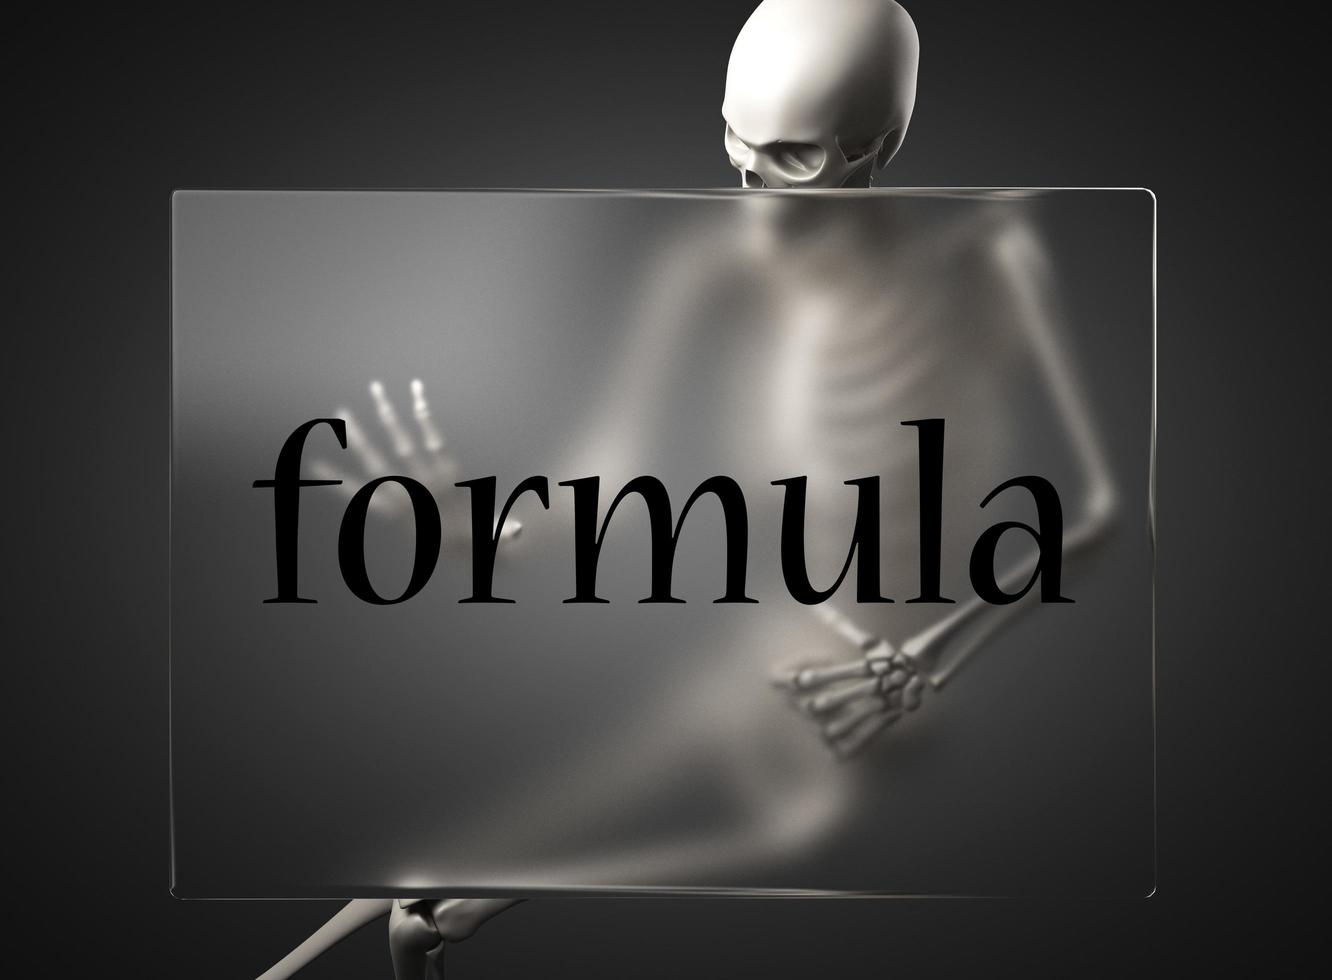 palabra de fórmula en vidrio y esqueleto foto